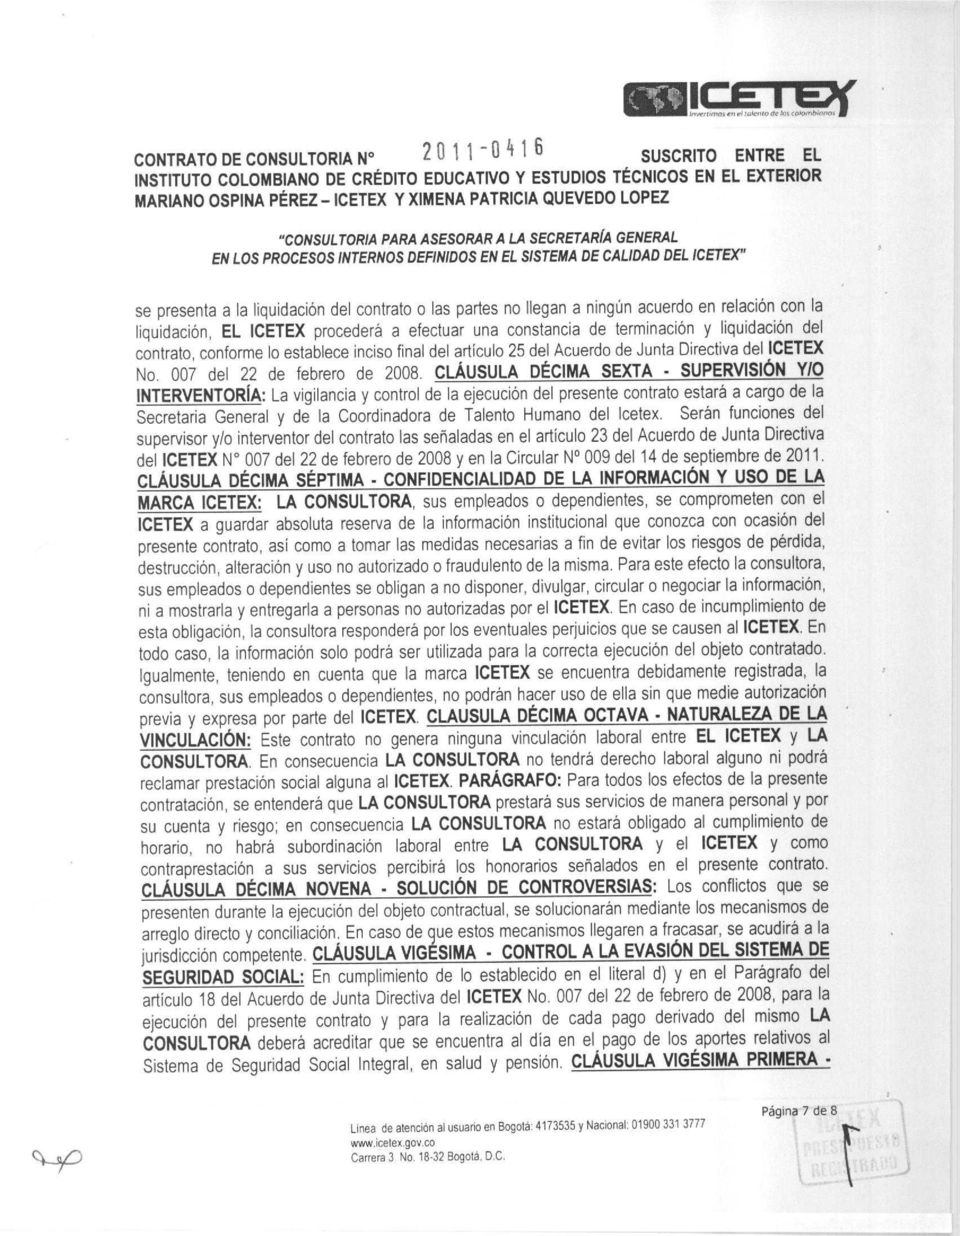 artículo 25 del Acuerdo de Junta Directiva del ICETEX No. 007 del 22 de febrero de 2008.